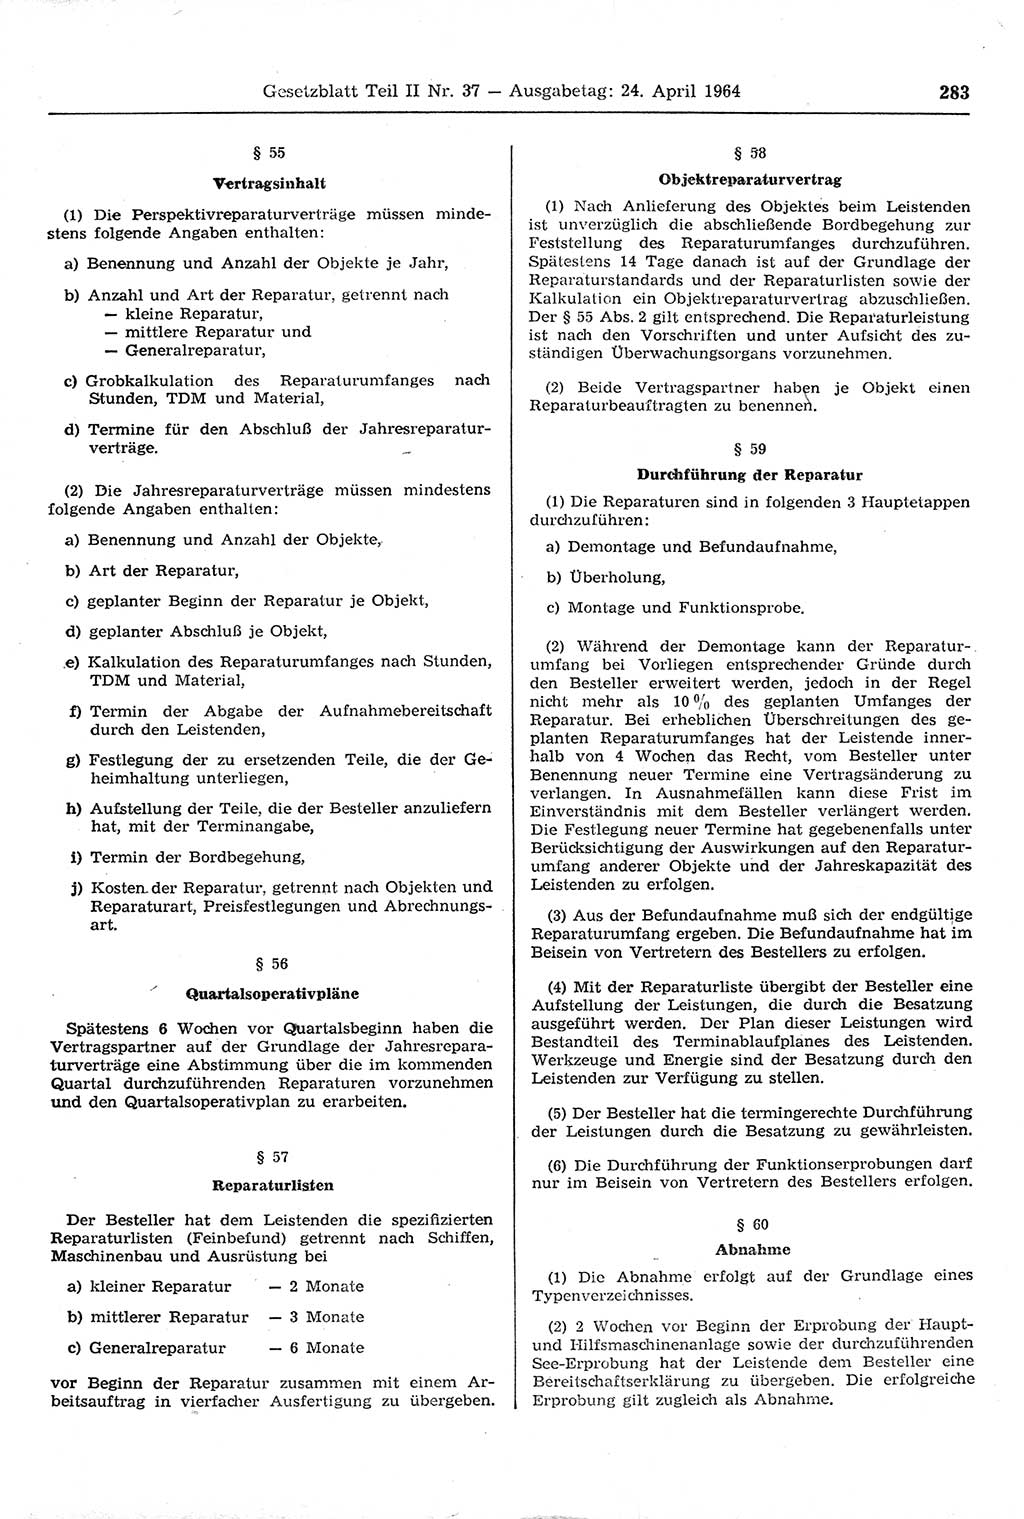 Gesetzblatt (GBl.) der Deutschen Demokratischen Republik (DDR) Teil ⅠⅠ 1964, Seite 283 (GBl. DDR ⅠⅠ 1964, S. 283)